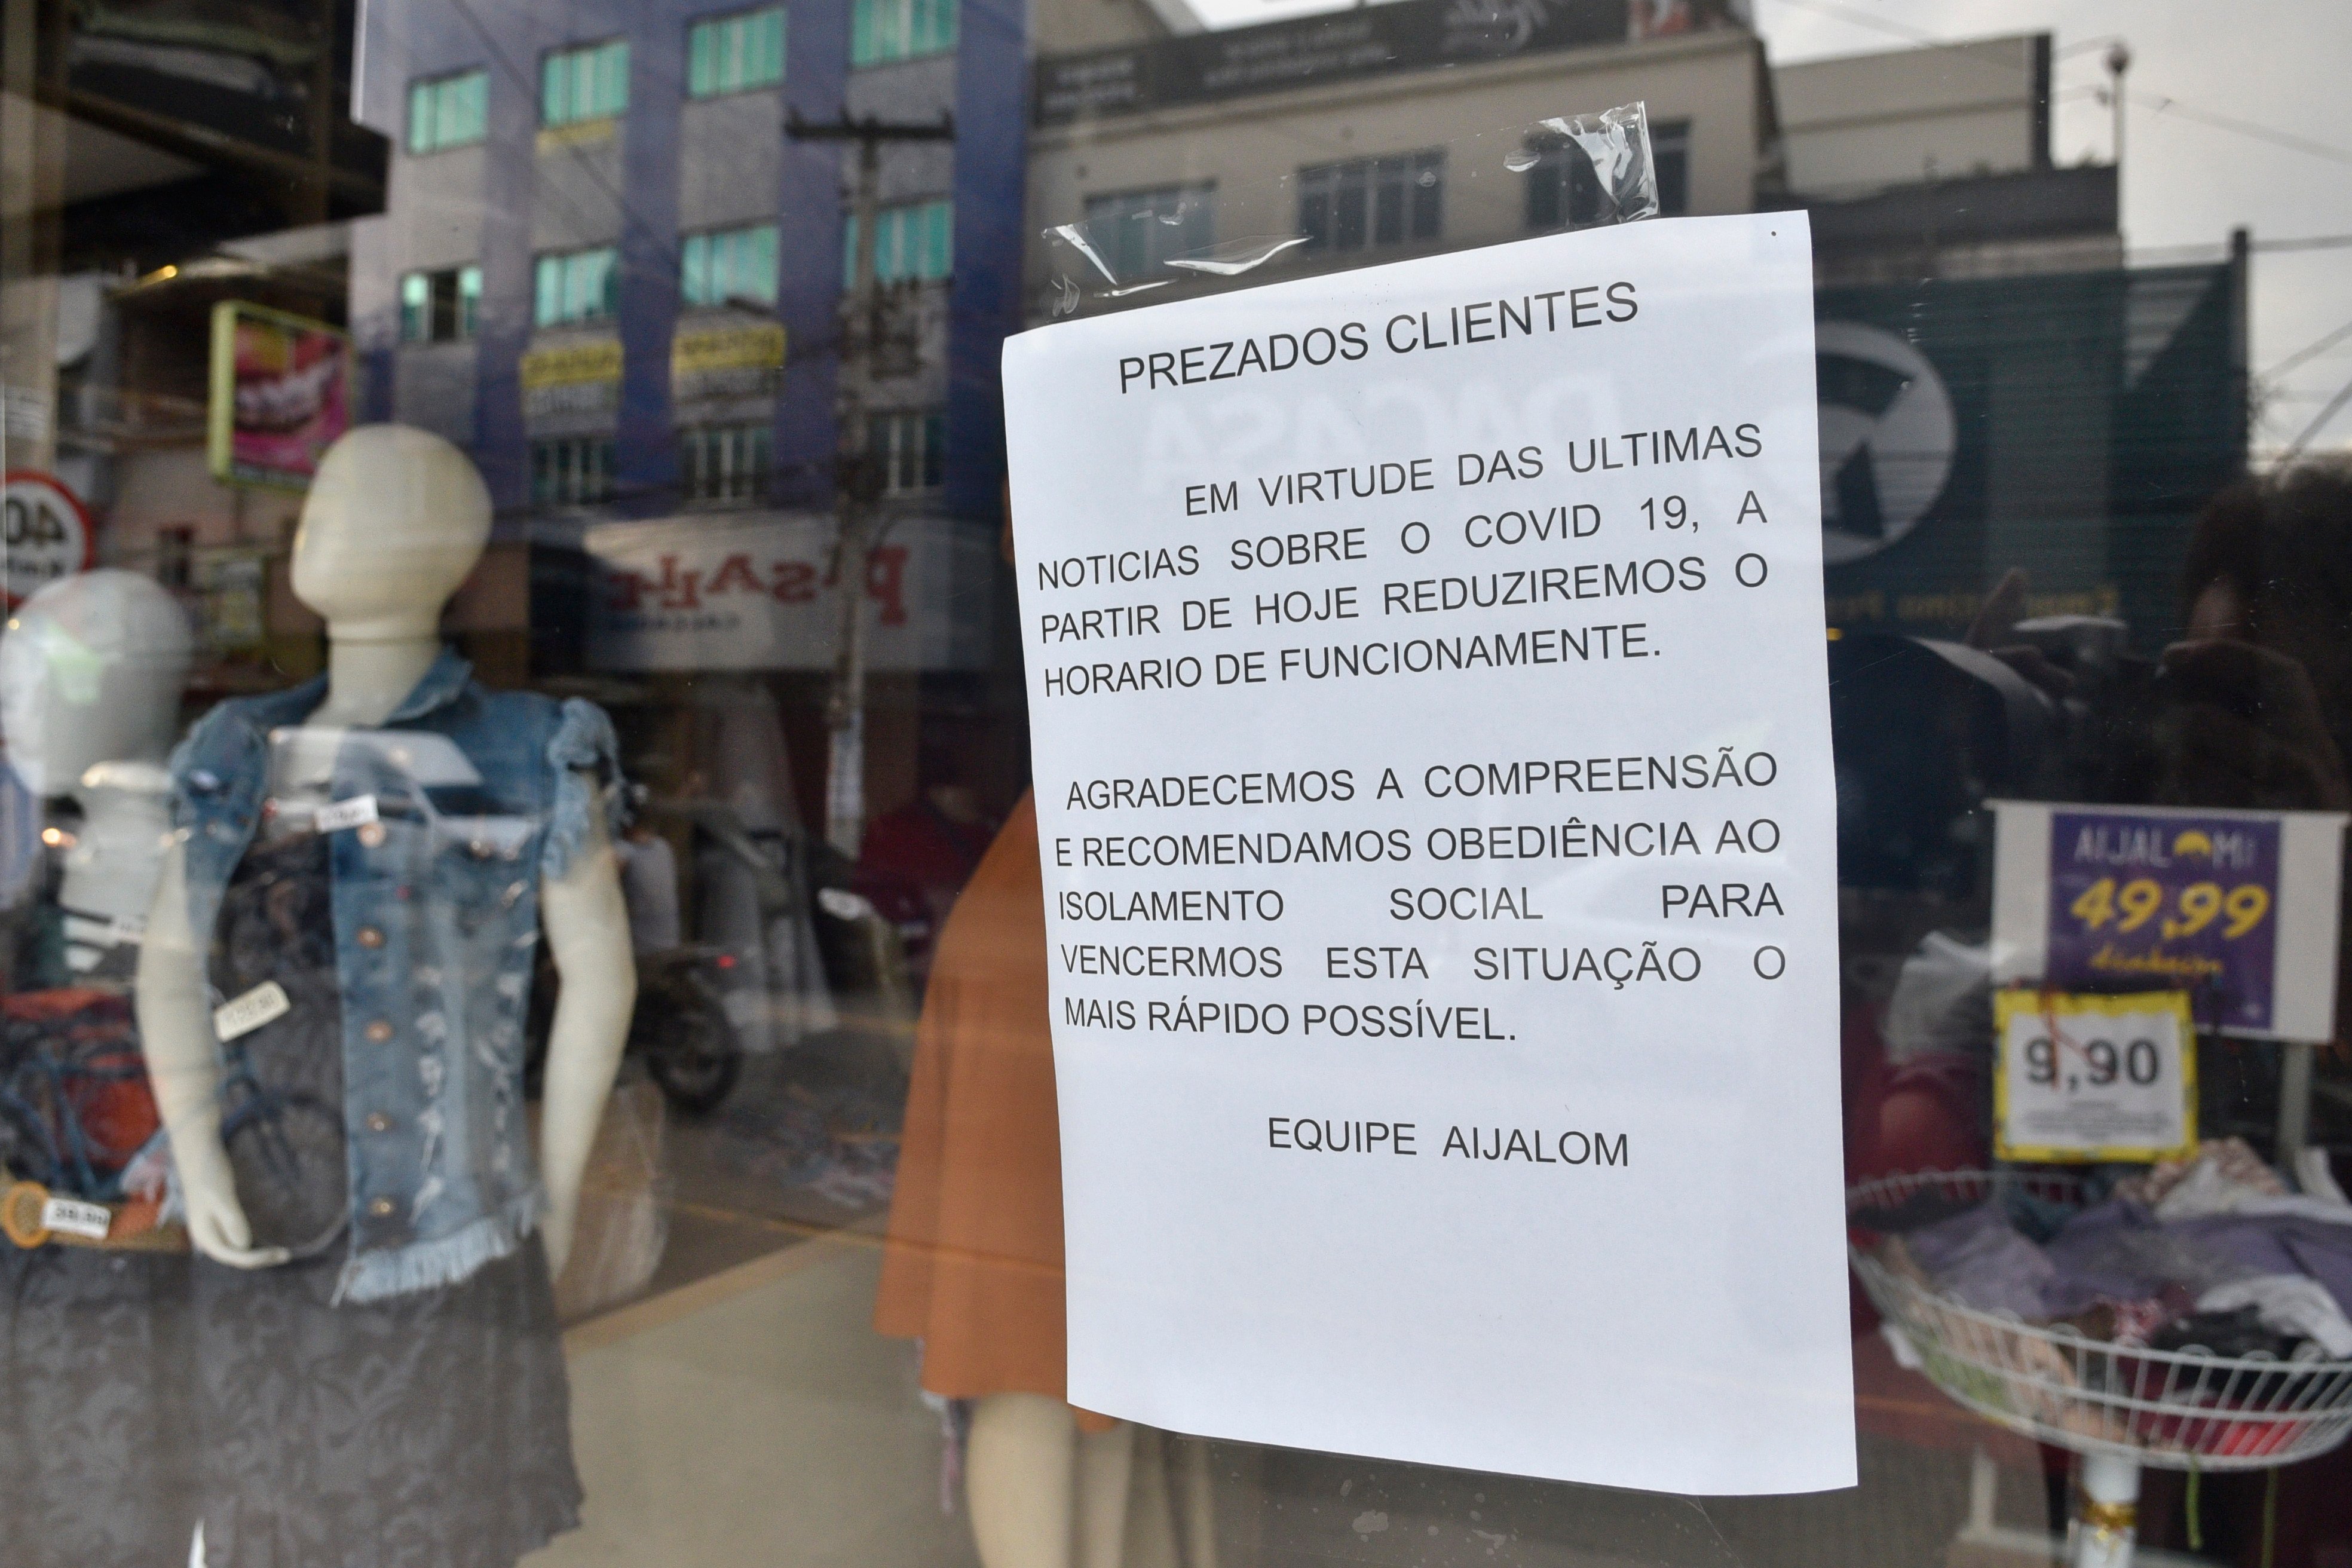 Cartaz avisa aos clientes sobre o fechamento da loja no período da pandemia.